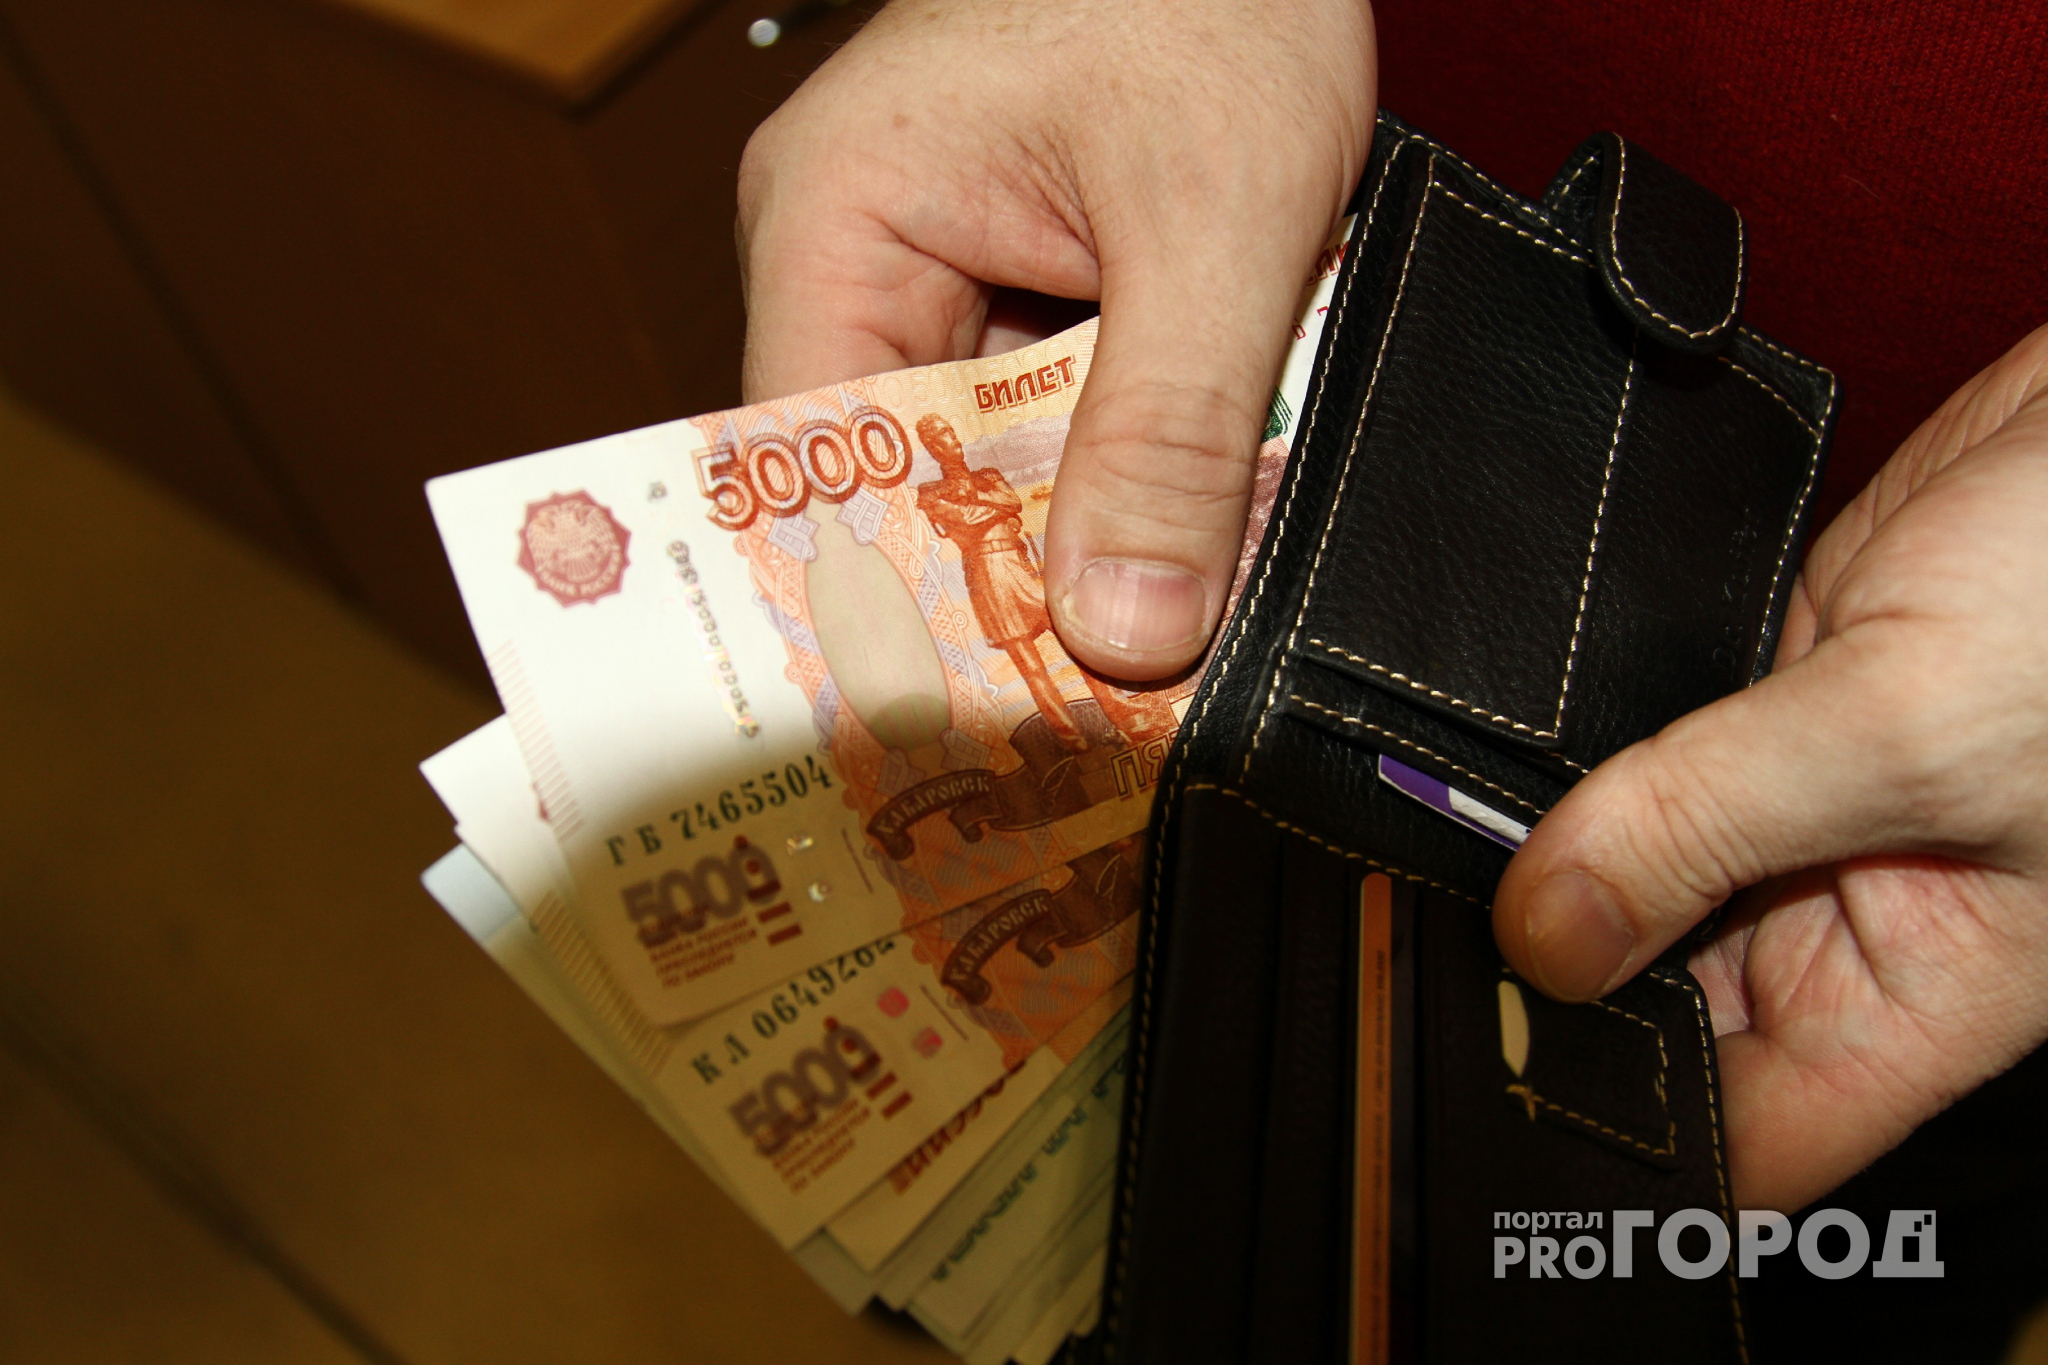 В Чепецке таксист забрал банковскую карту пассажирки и снял с нее деньги